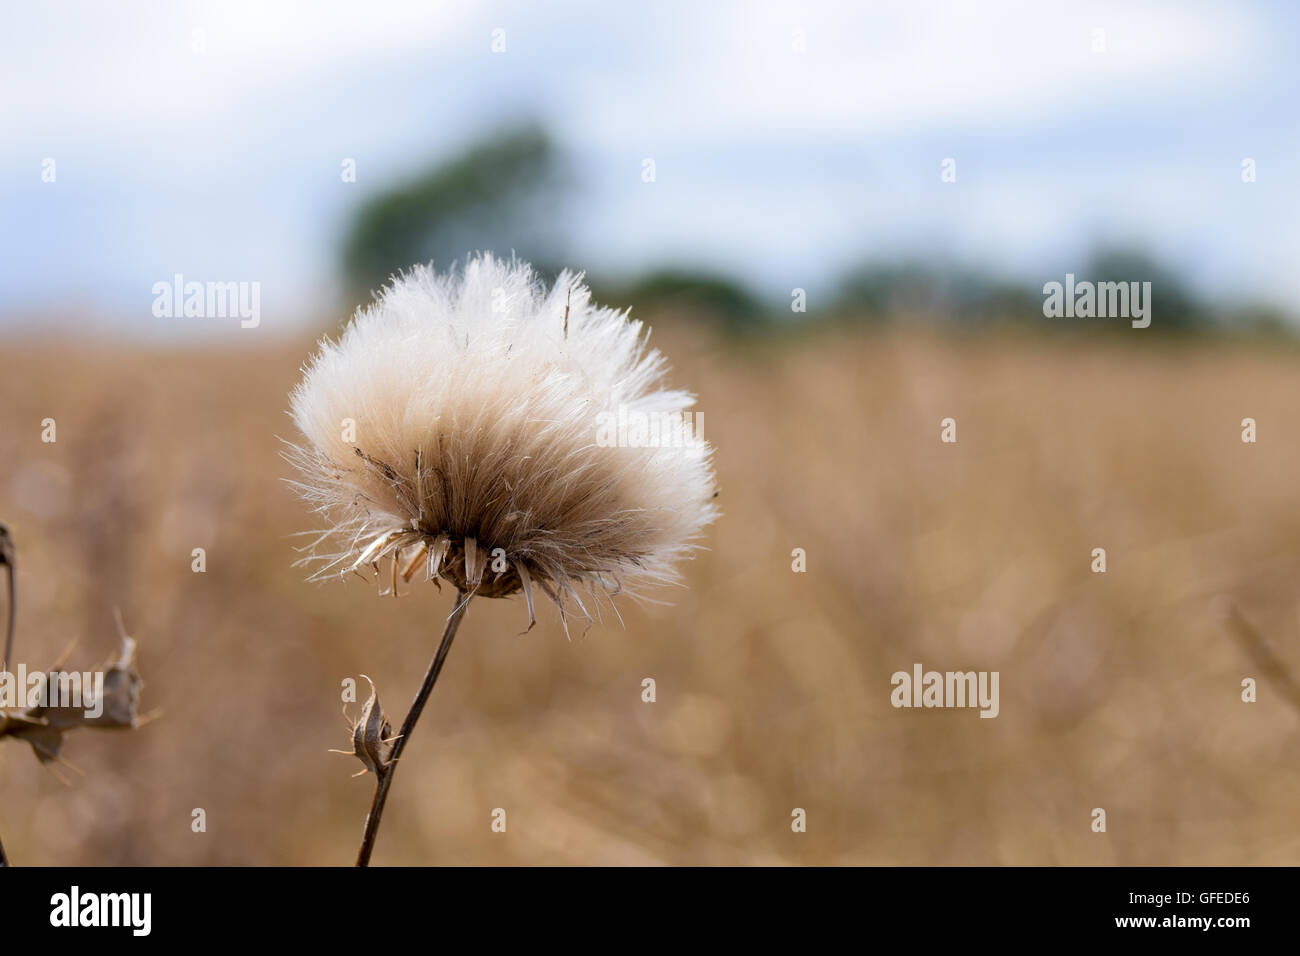 Creeping thistle fiore piante pronto per disperdere i semi nel vento Foto Stock